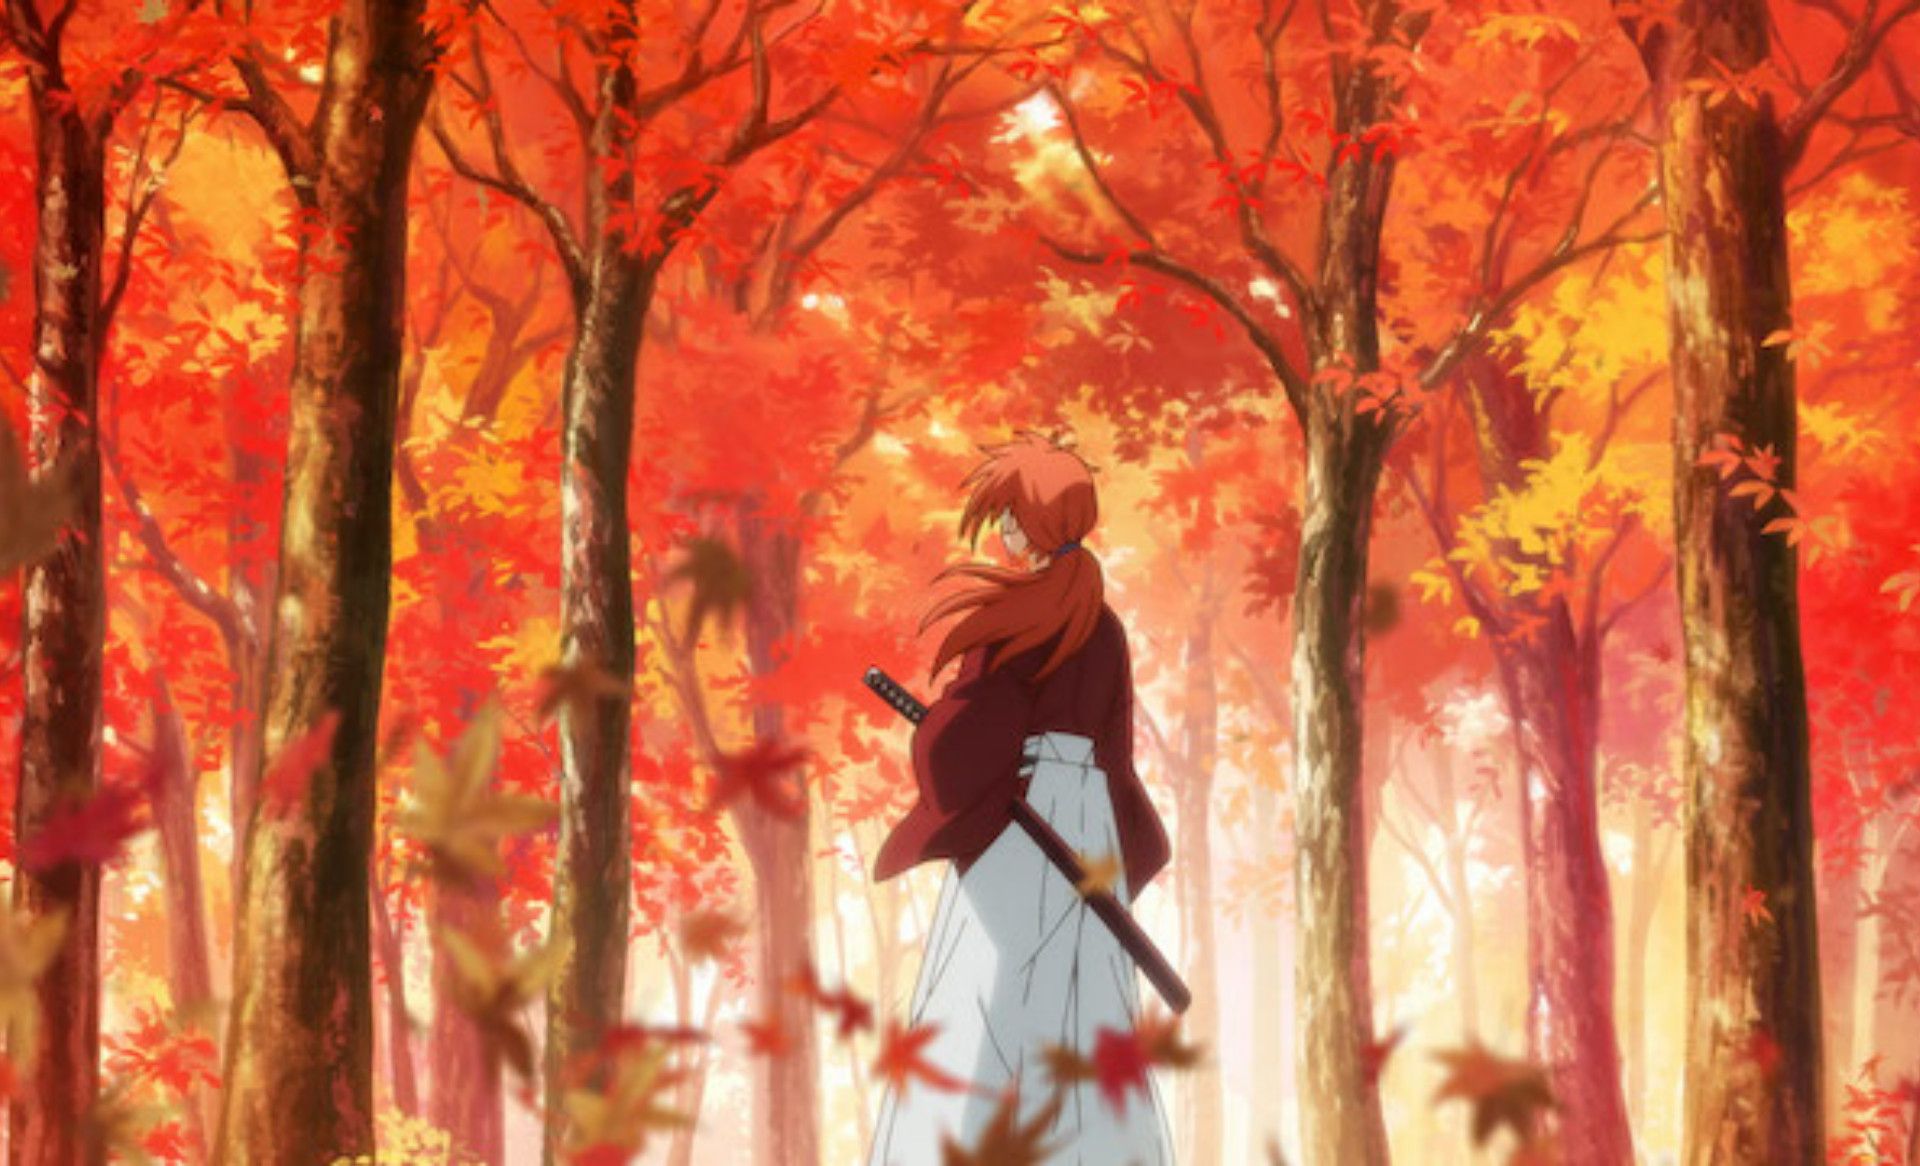 Rurouni Kenshin: Season 1